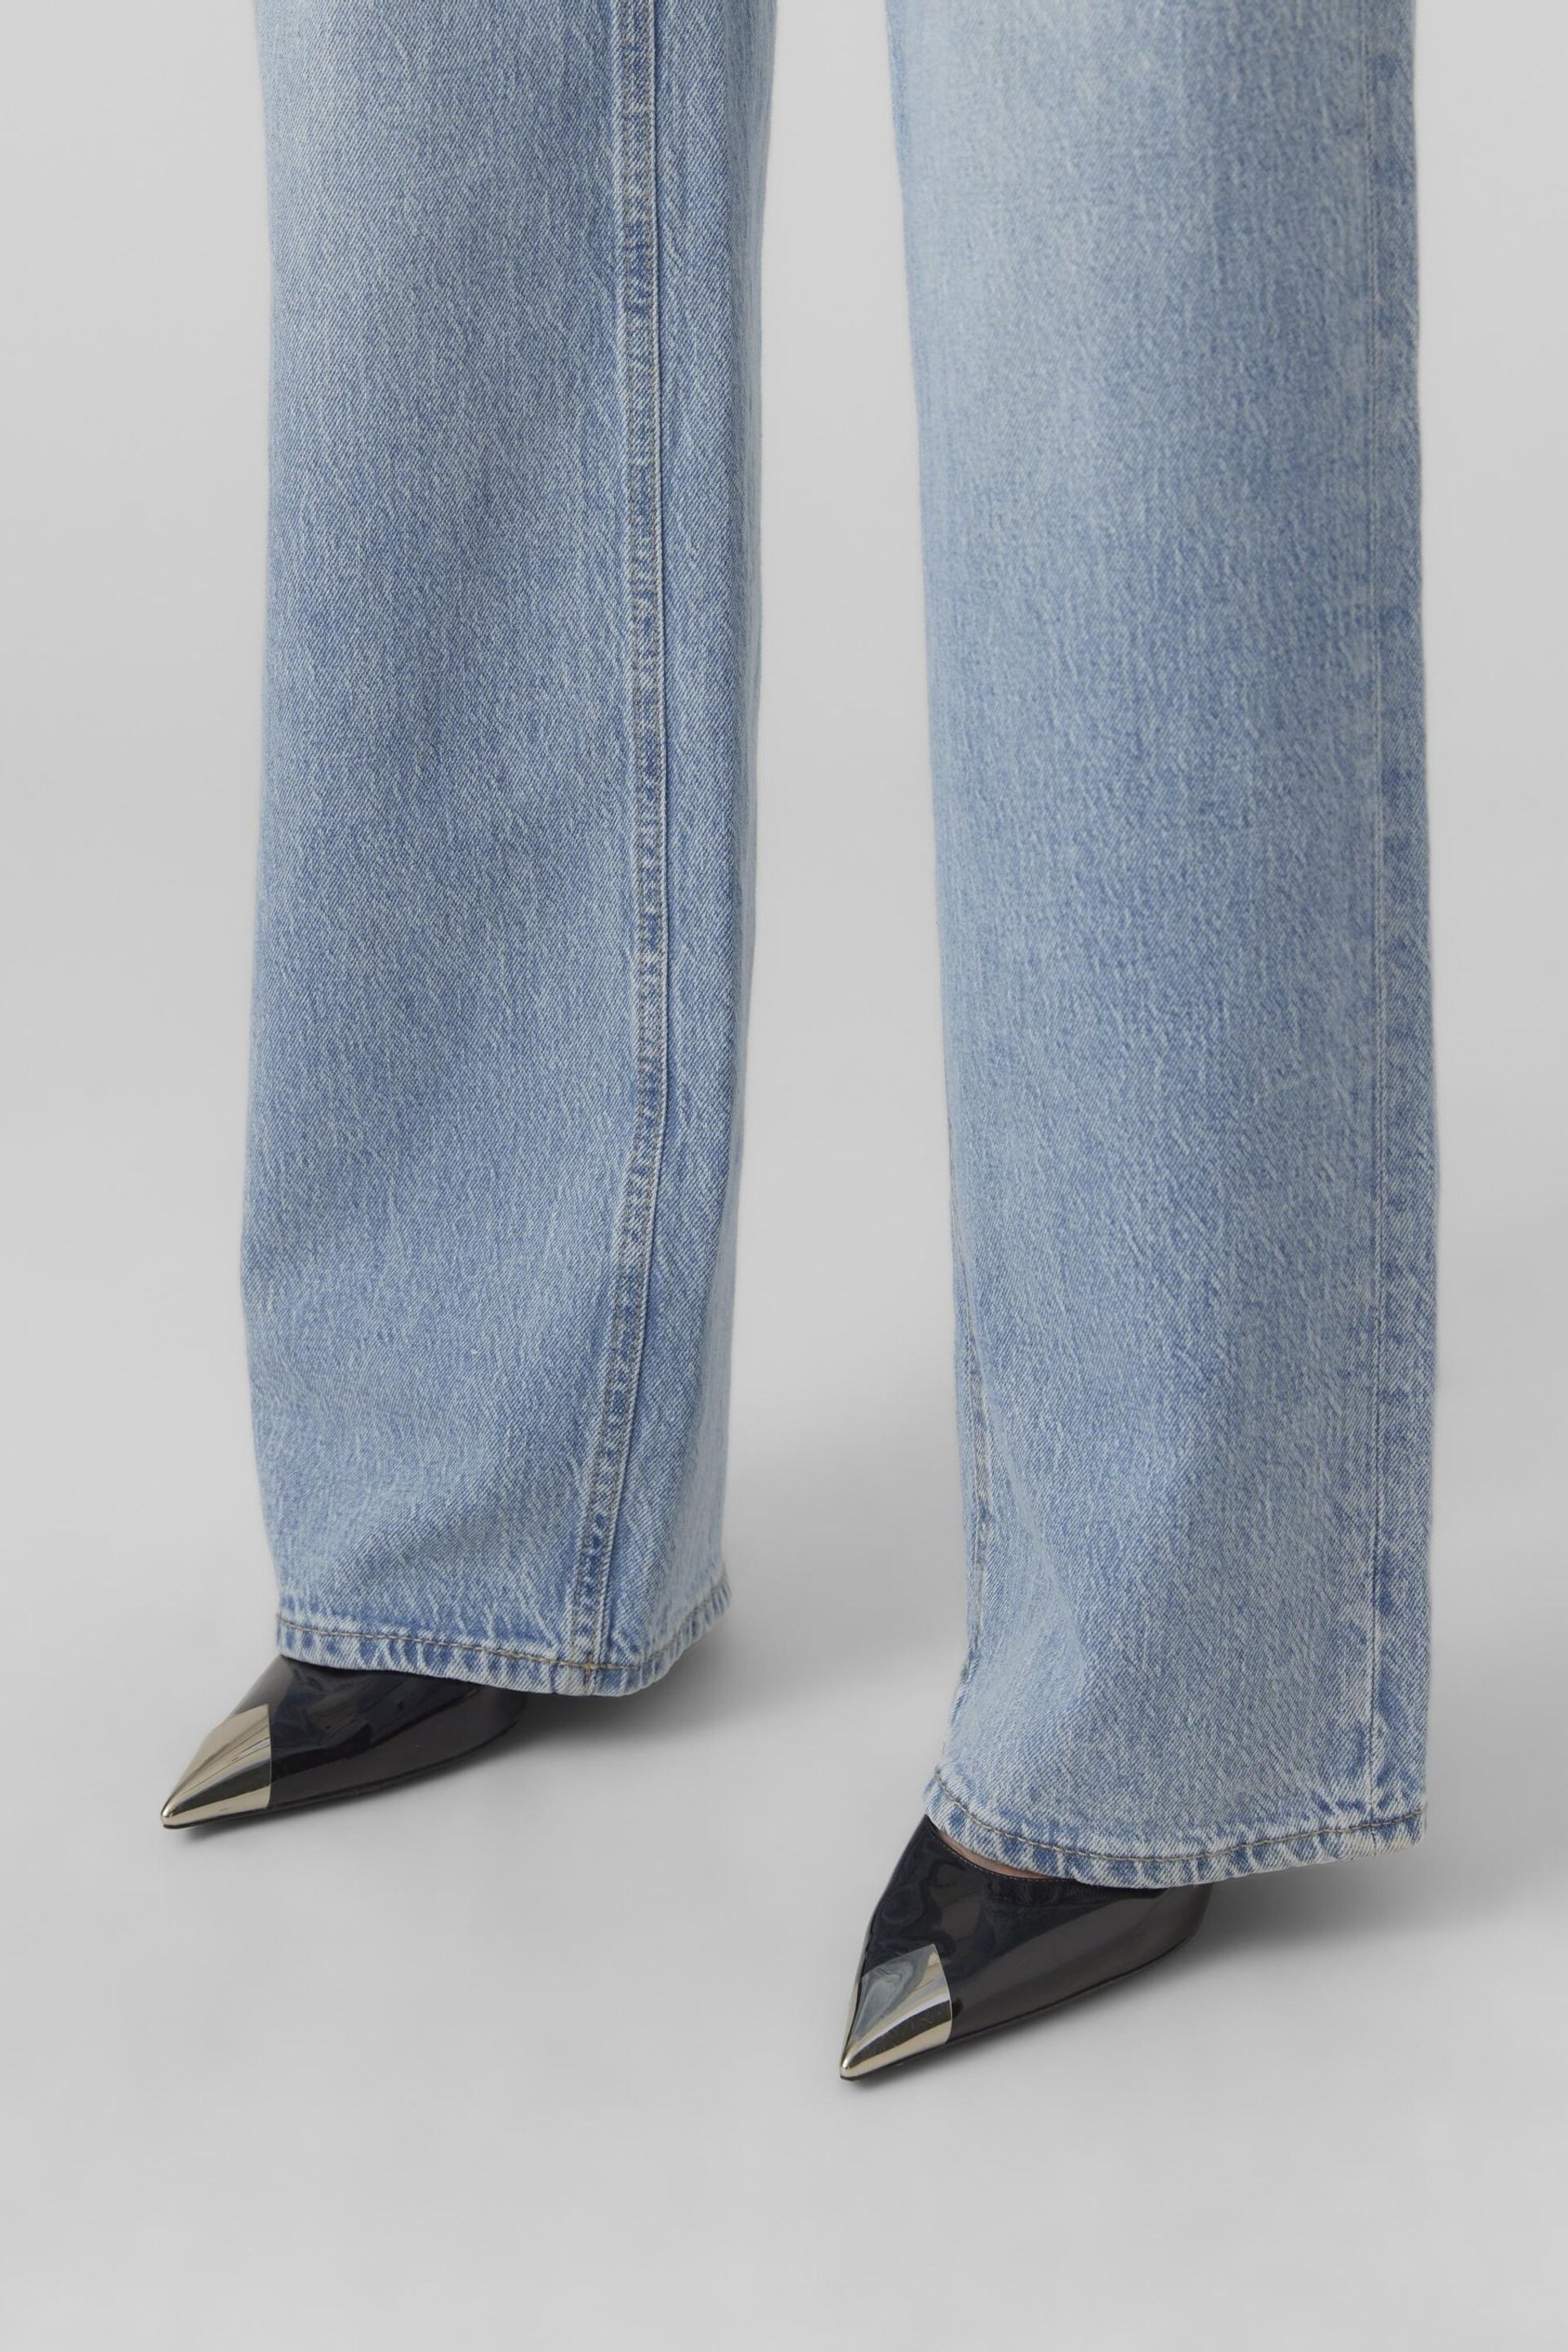 VERO MODA Blue Denim High Waist Full Length Wide Leg Jeans - Image 3 of 3